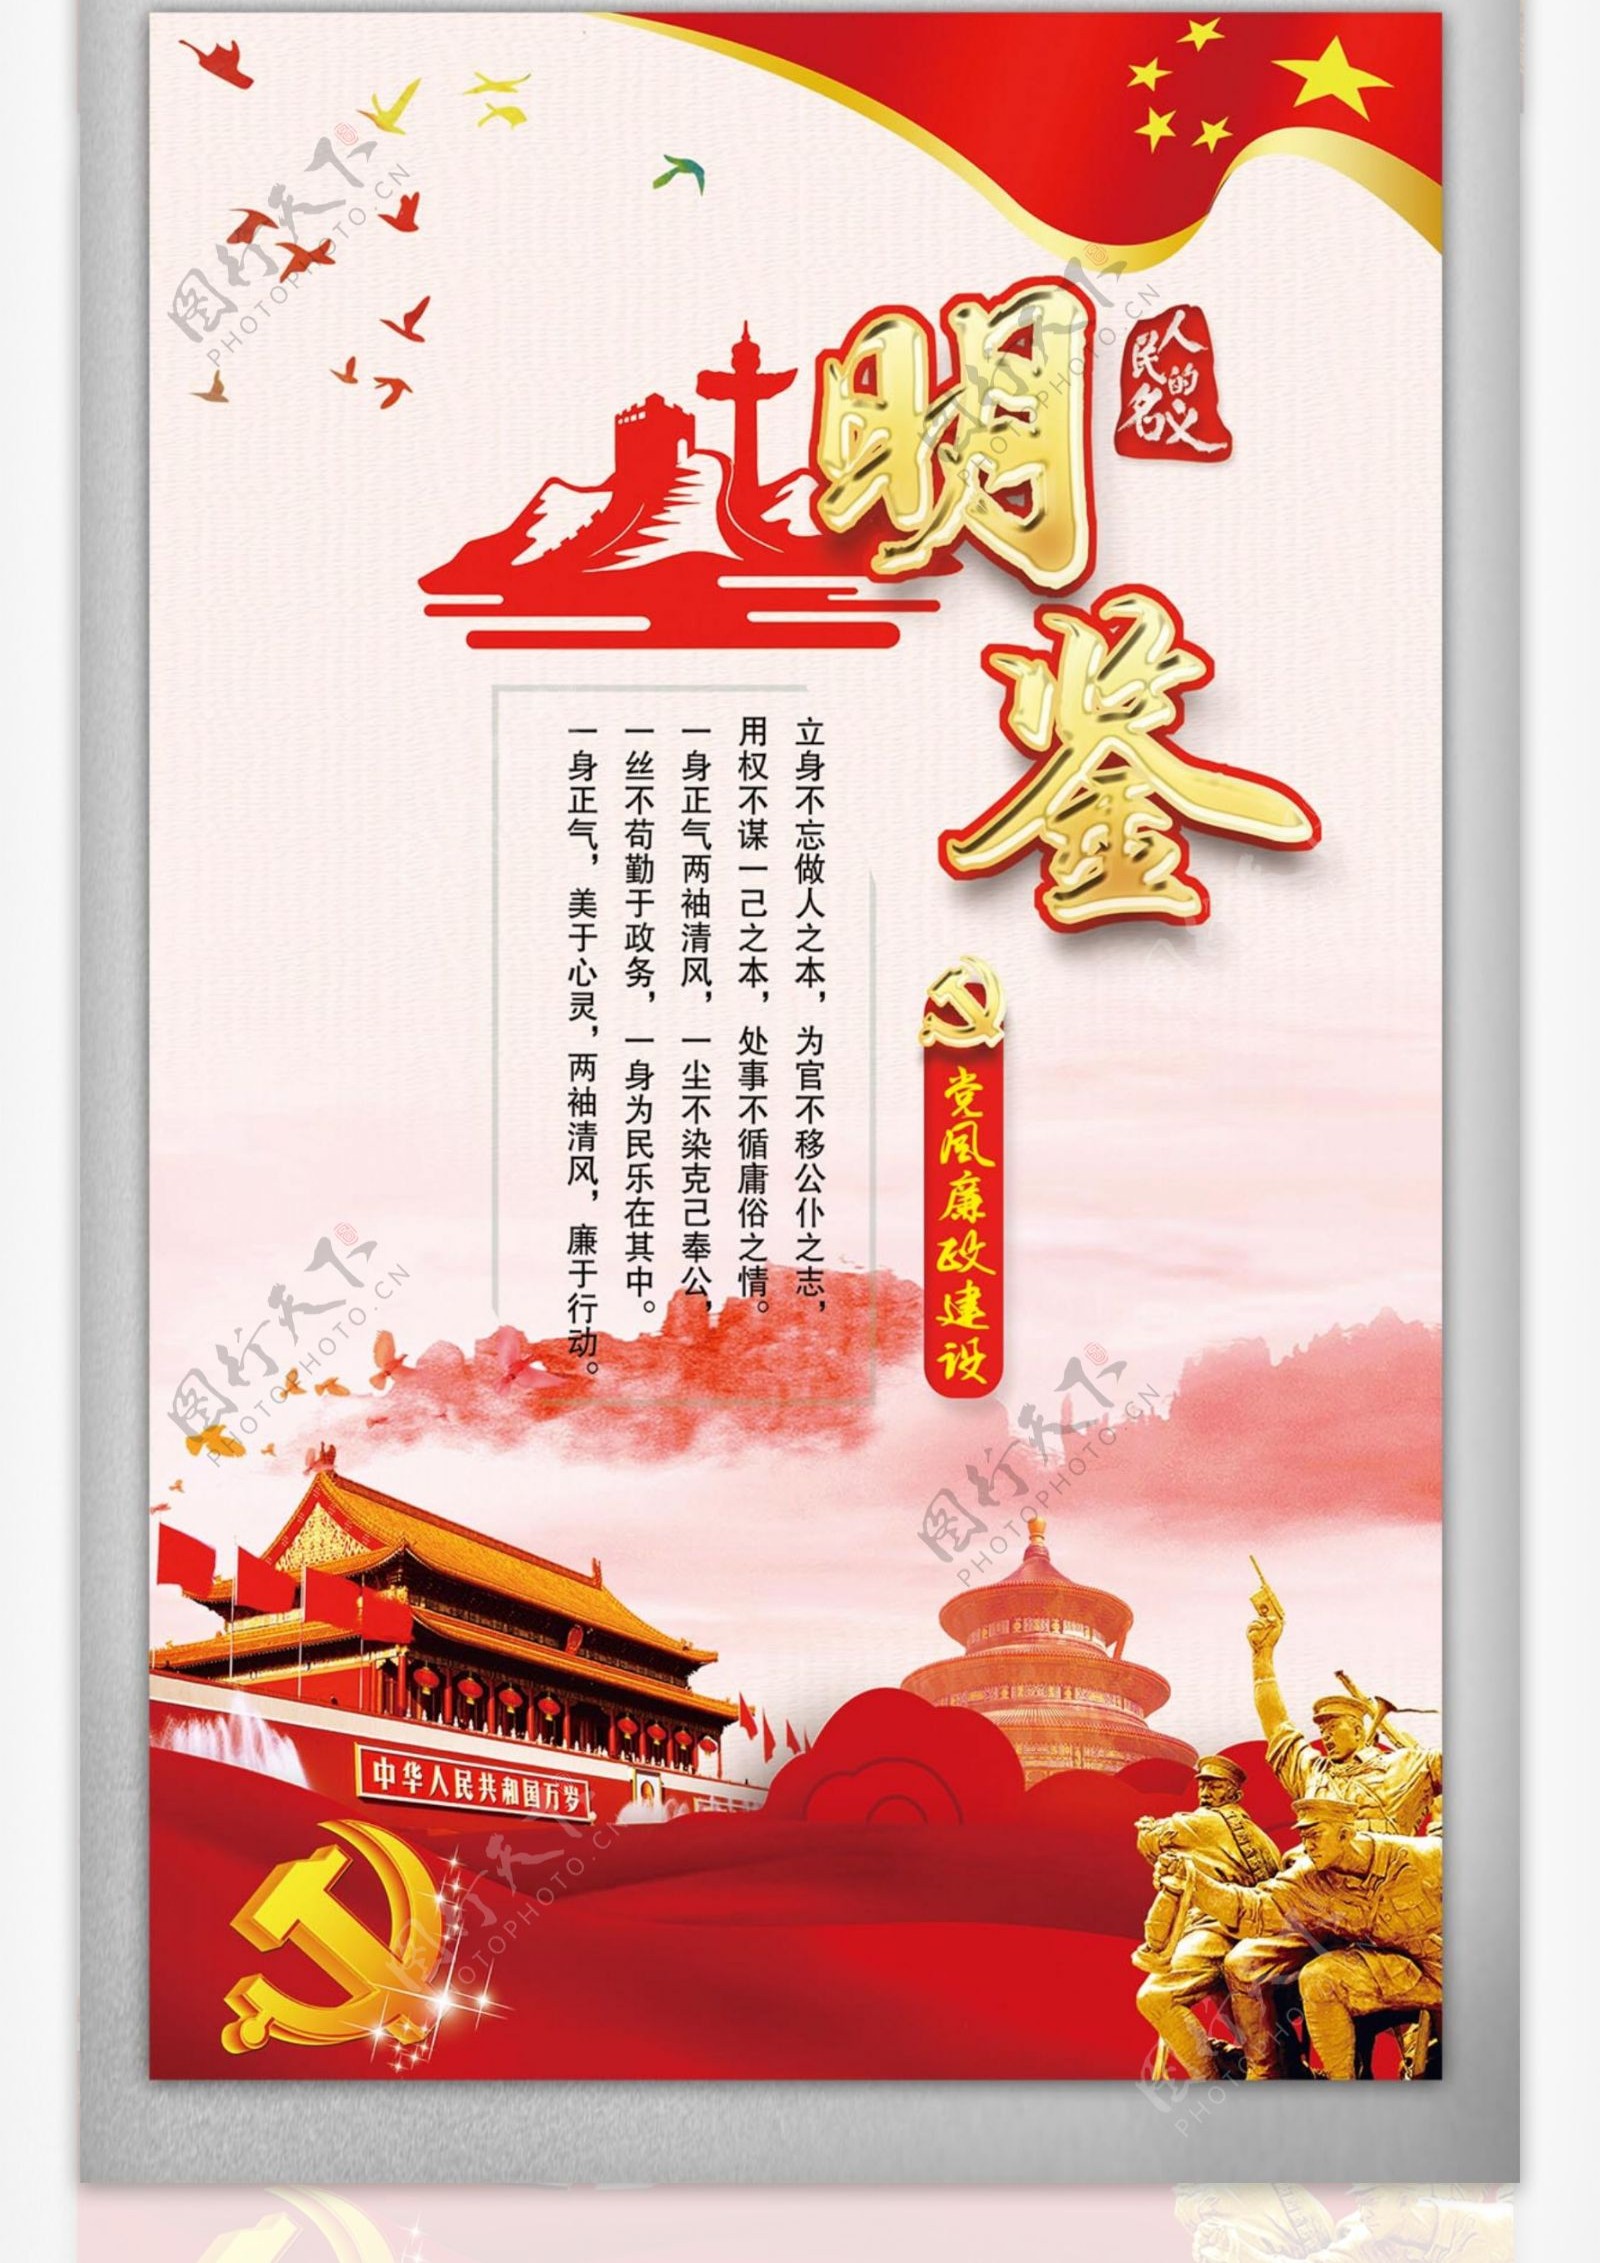 创意中国风廉洁挂画宣传文化设计素材